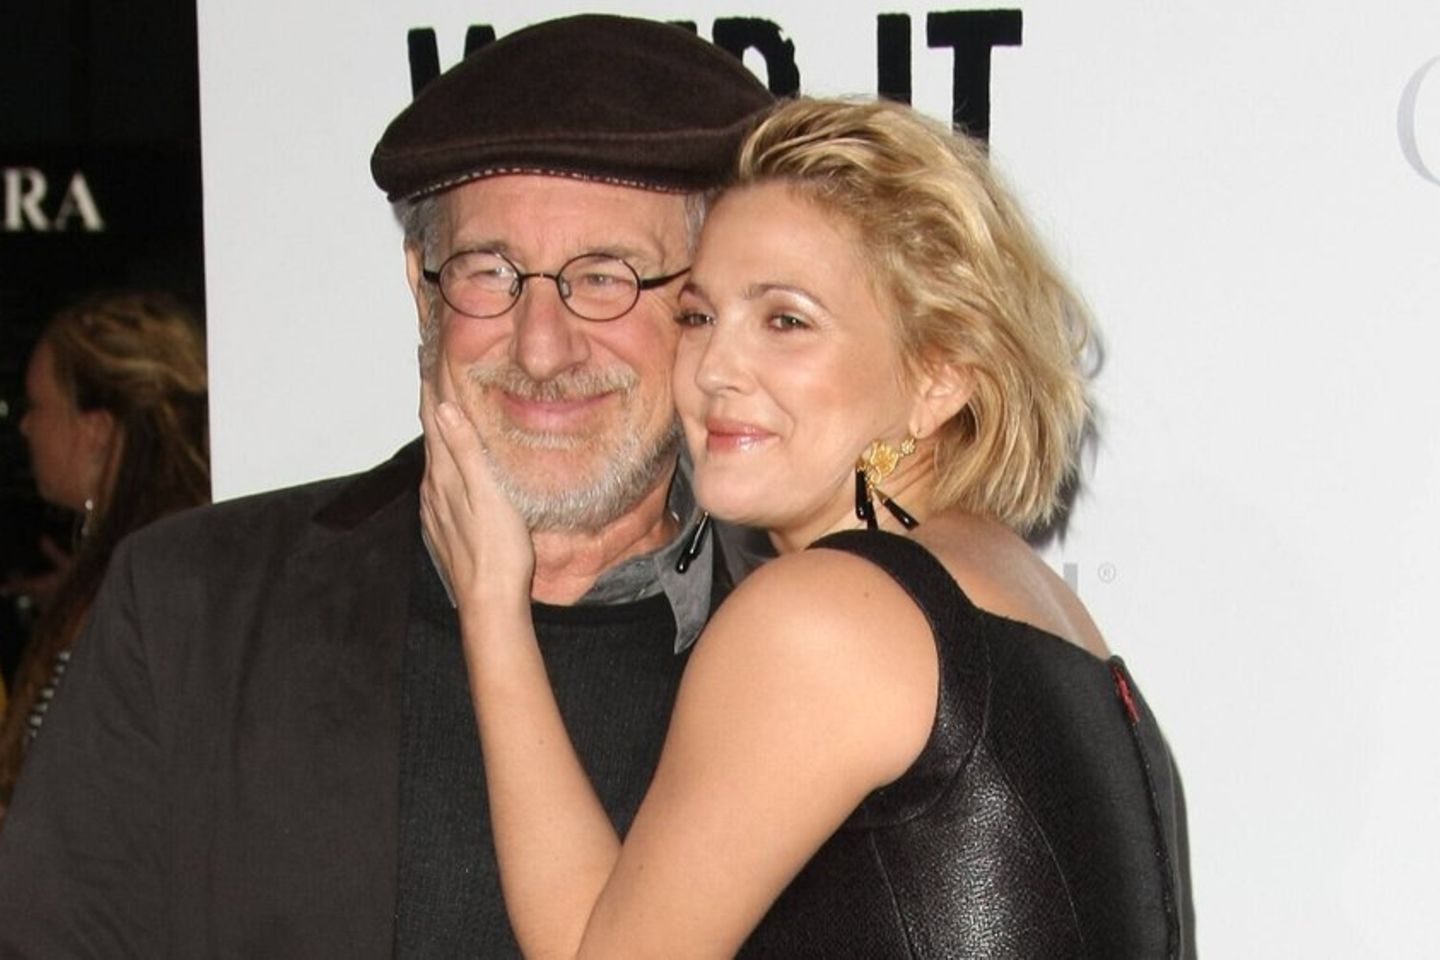 Drew Barrymore bezeichnet Steven Spielberg als "einzige Vaterfigur"